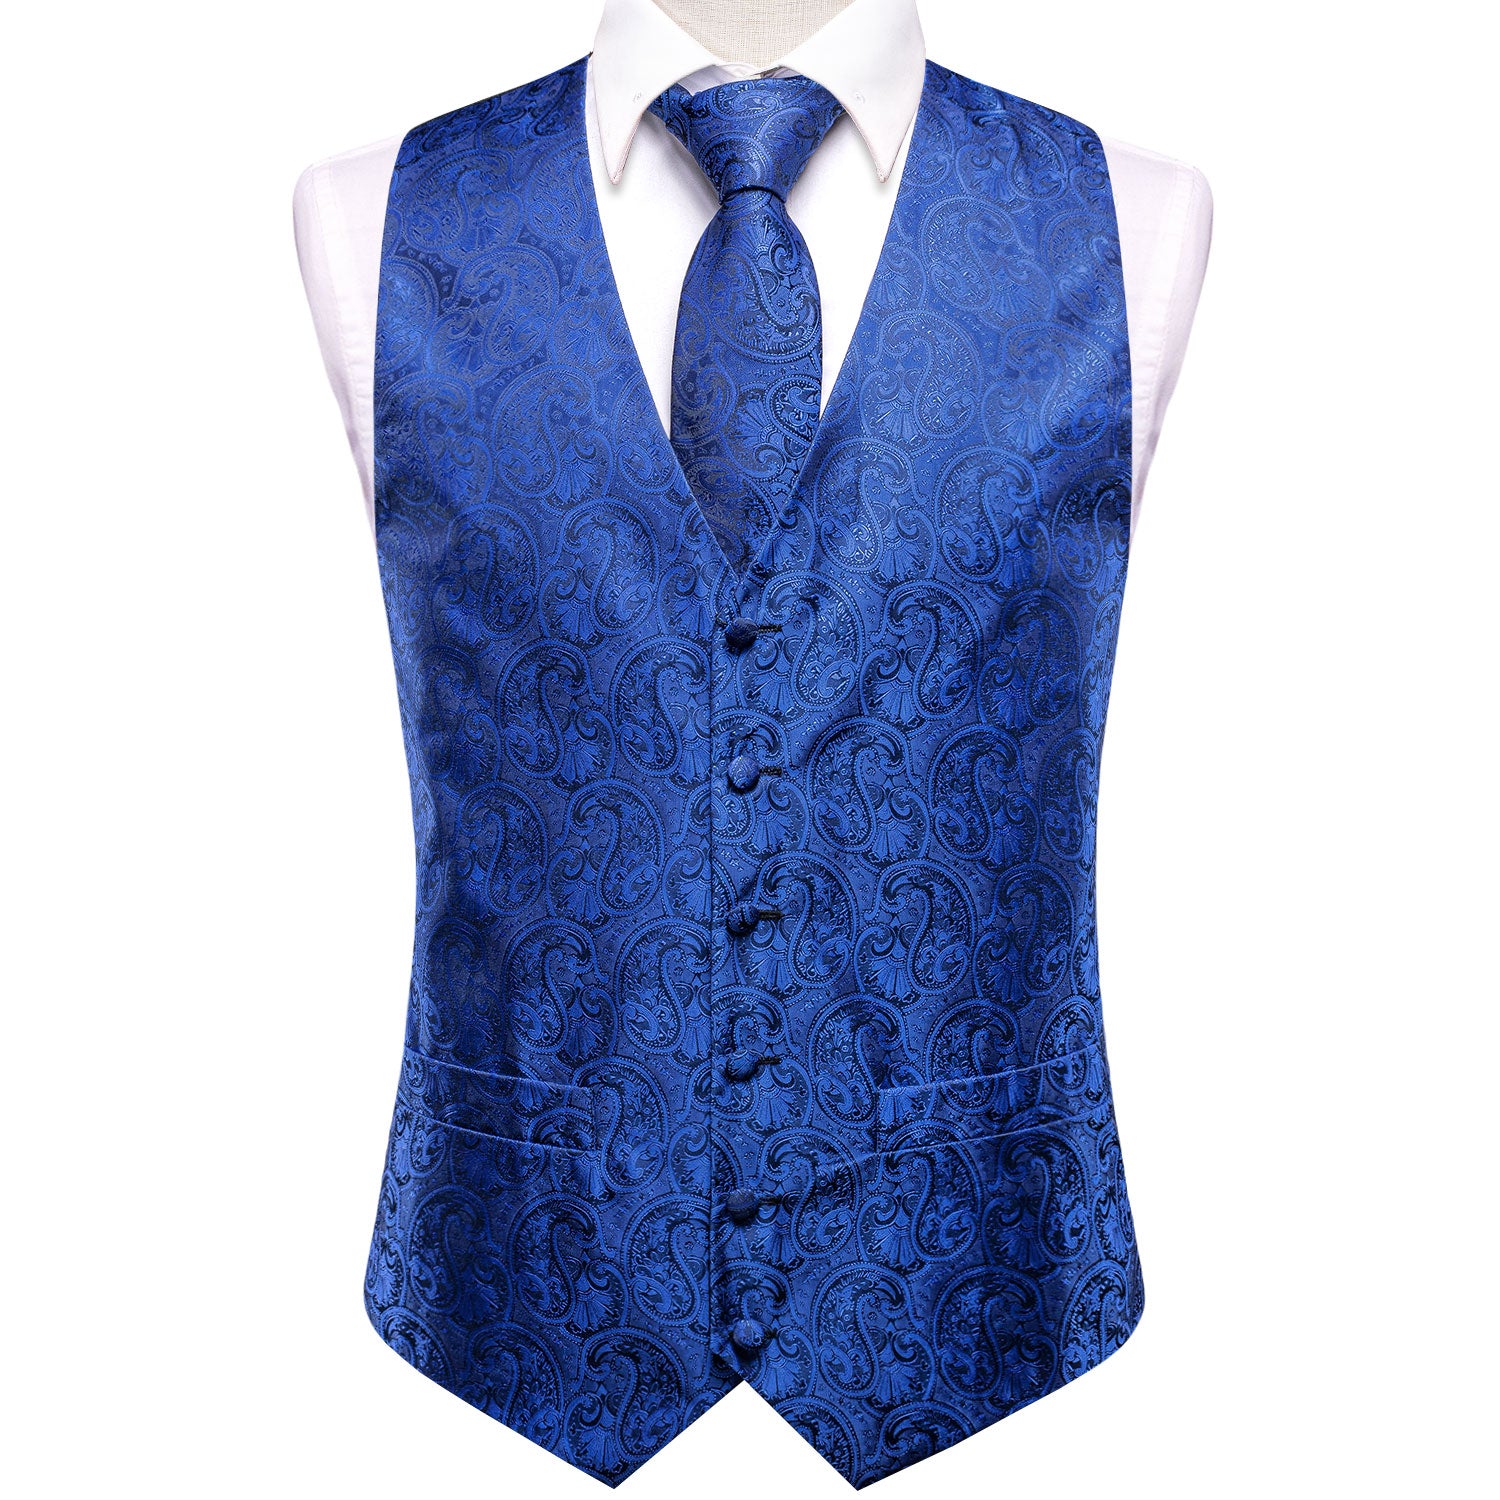 Luxury Navy Blue Paisley Silk Men's Vest Hanky Cufflinks Tie Set Waistcoat Suit Set